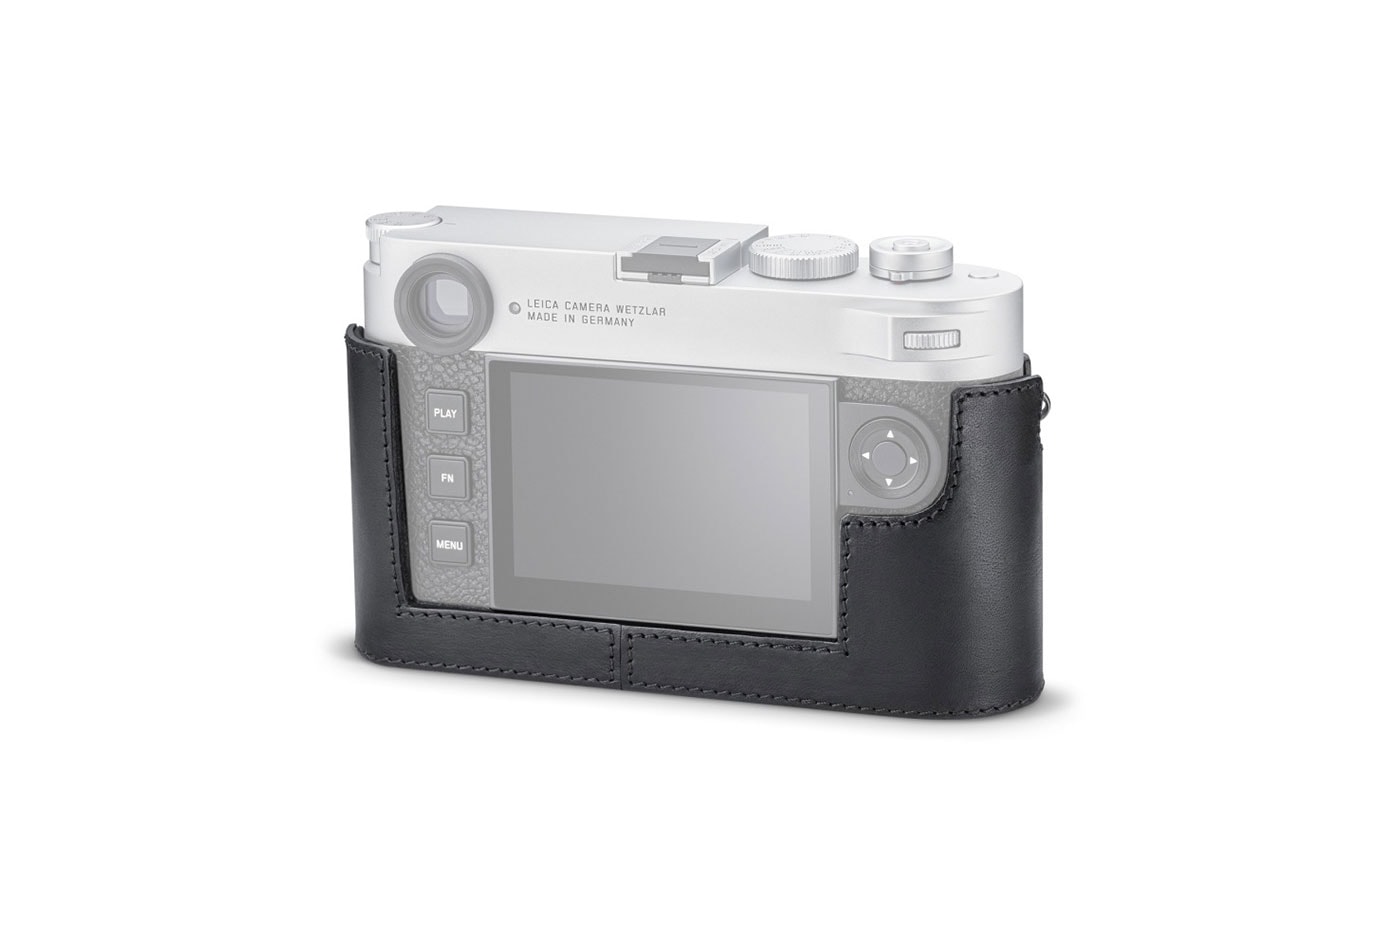 ライカの最新モデル M11の新たなリーク画像が浮上 New Leica M11 Leaked Pictures Specifications Release January 13 60MP Sensor Visoflex Electronic Shutter Black Gray Price Release Buy Info